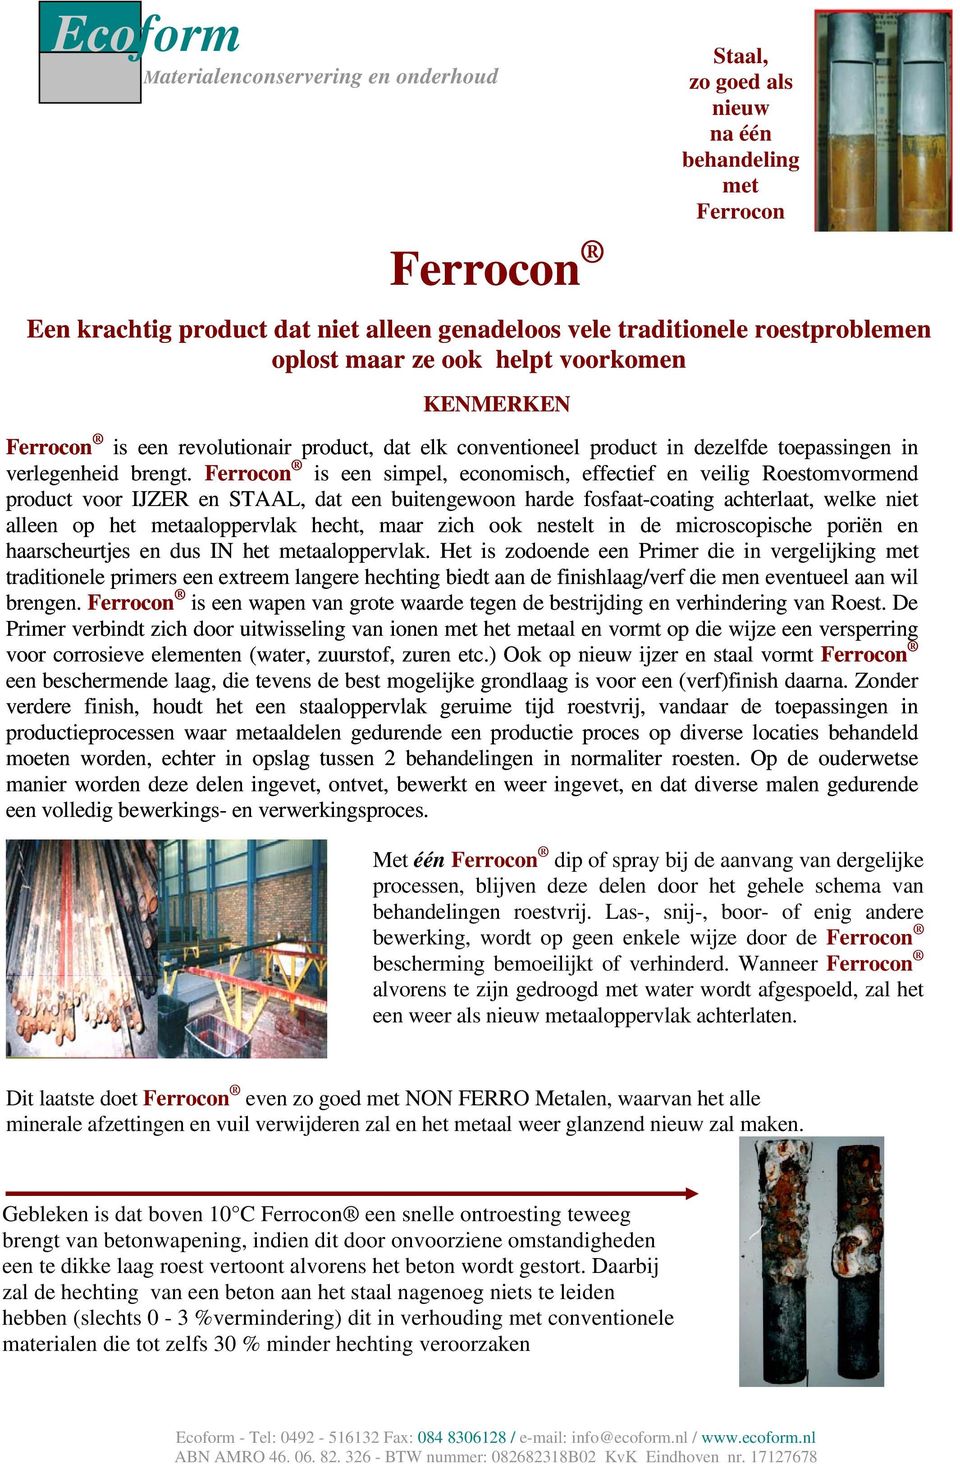 Ferrocon is een simpel, economisch, effectief en veilig Roestomvormend product voor IJZER en STAAL, dat een buitengewoon harde fosfaat-coating achterlaat, welke niet alleen op het metaaloppervlak